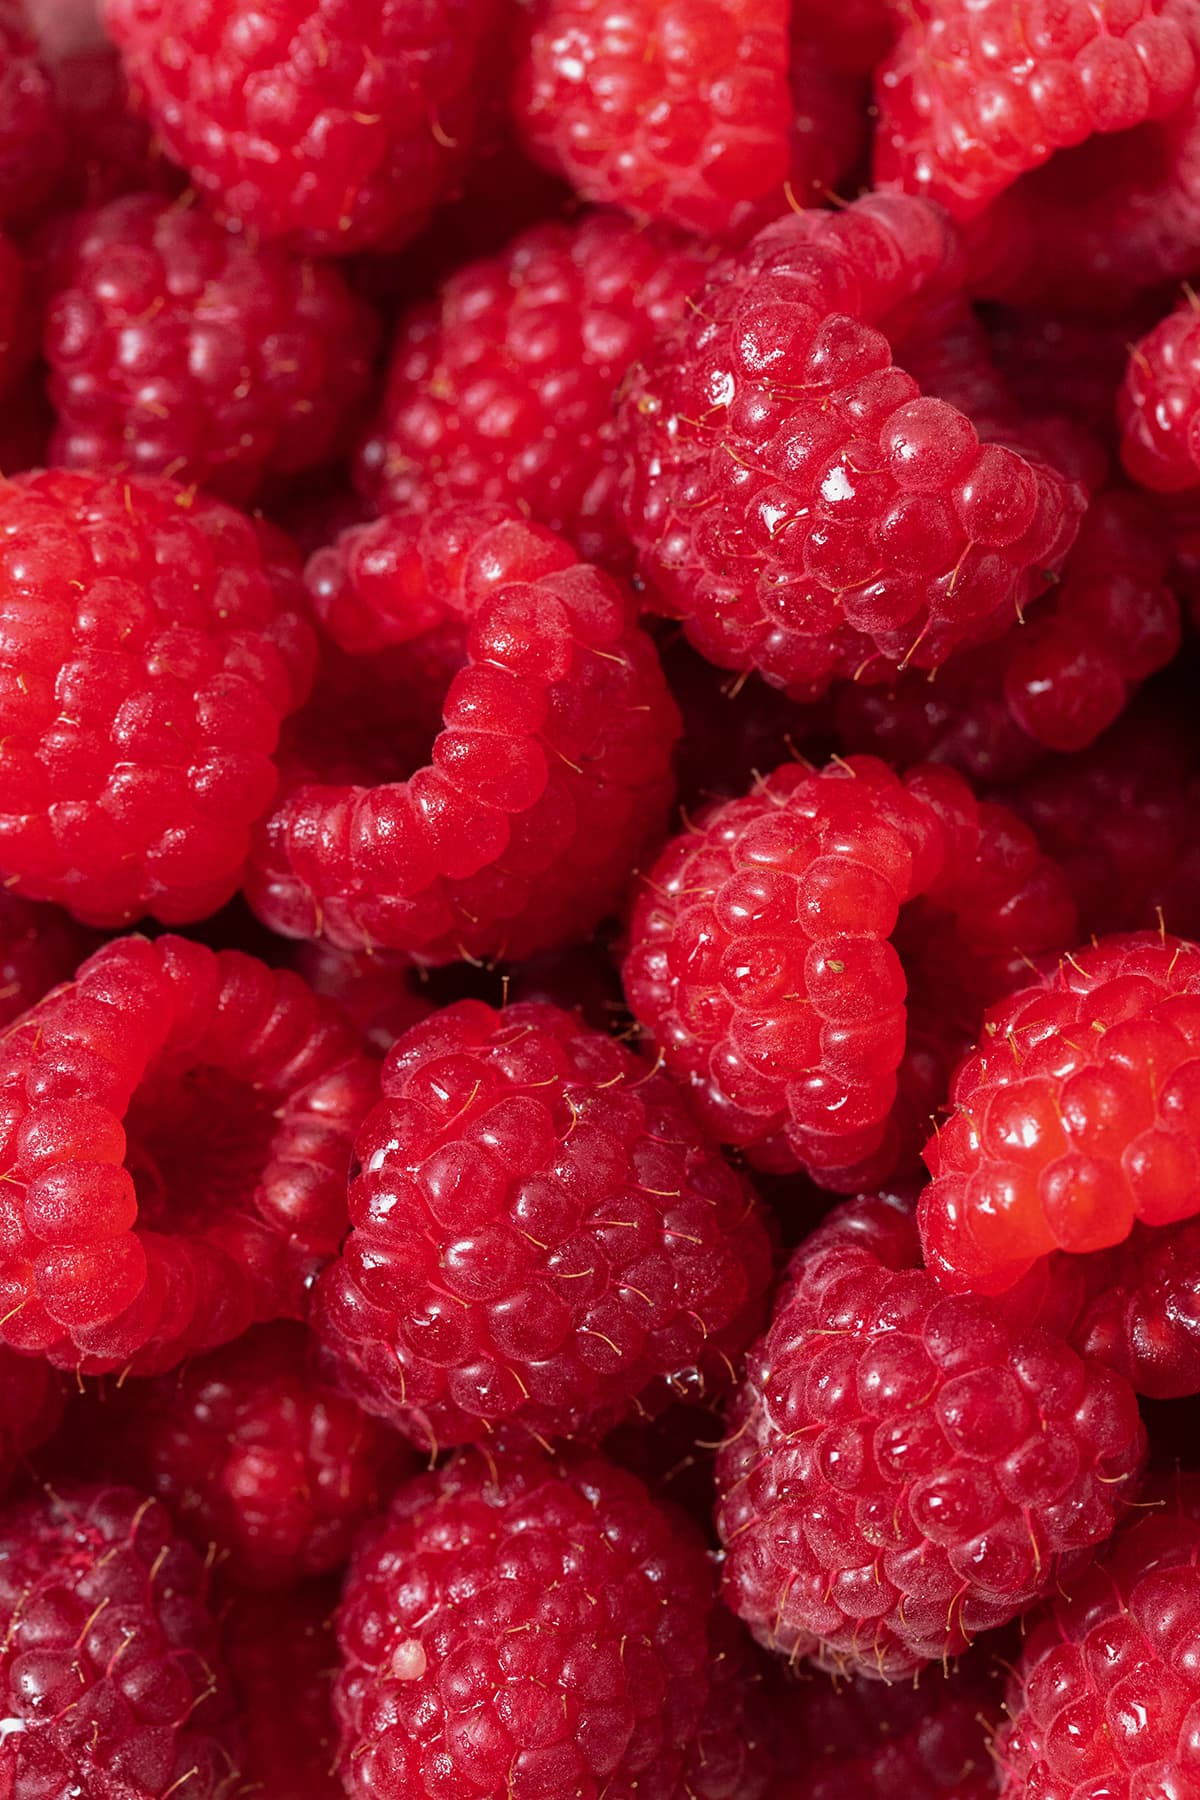 A macro show of fresh raspberries.